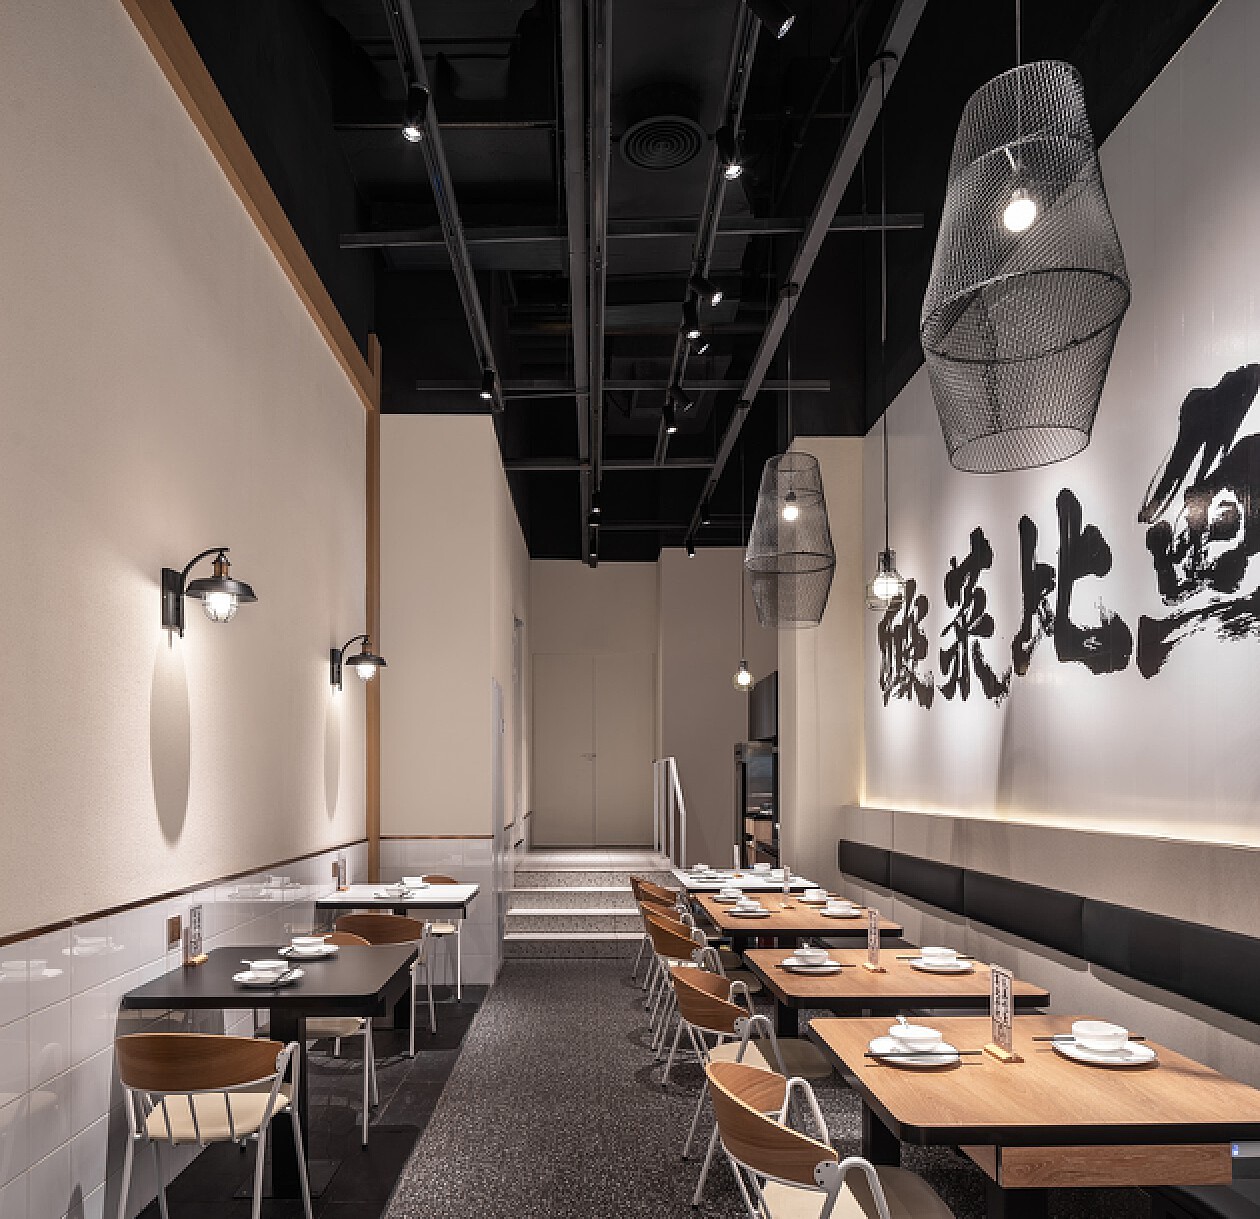 京普酸菜鱼 - 餐饮装修公司丨餐饮设计丨餐厅设计公司--北京零点空间装饰设计有限公司